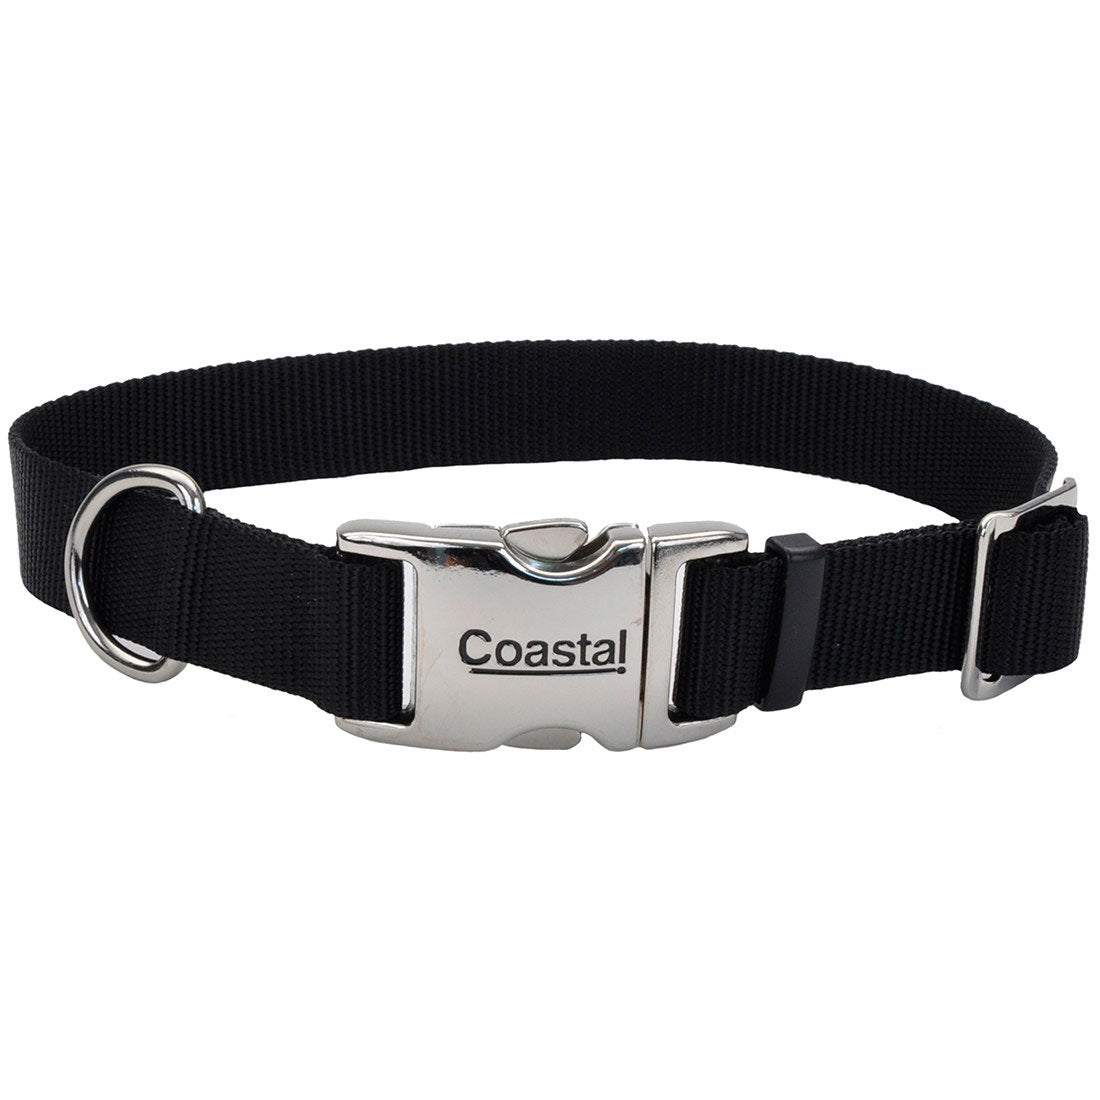 Coastal Pet Products, Coastal Adjustable Dog Collar with Metal Buckle